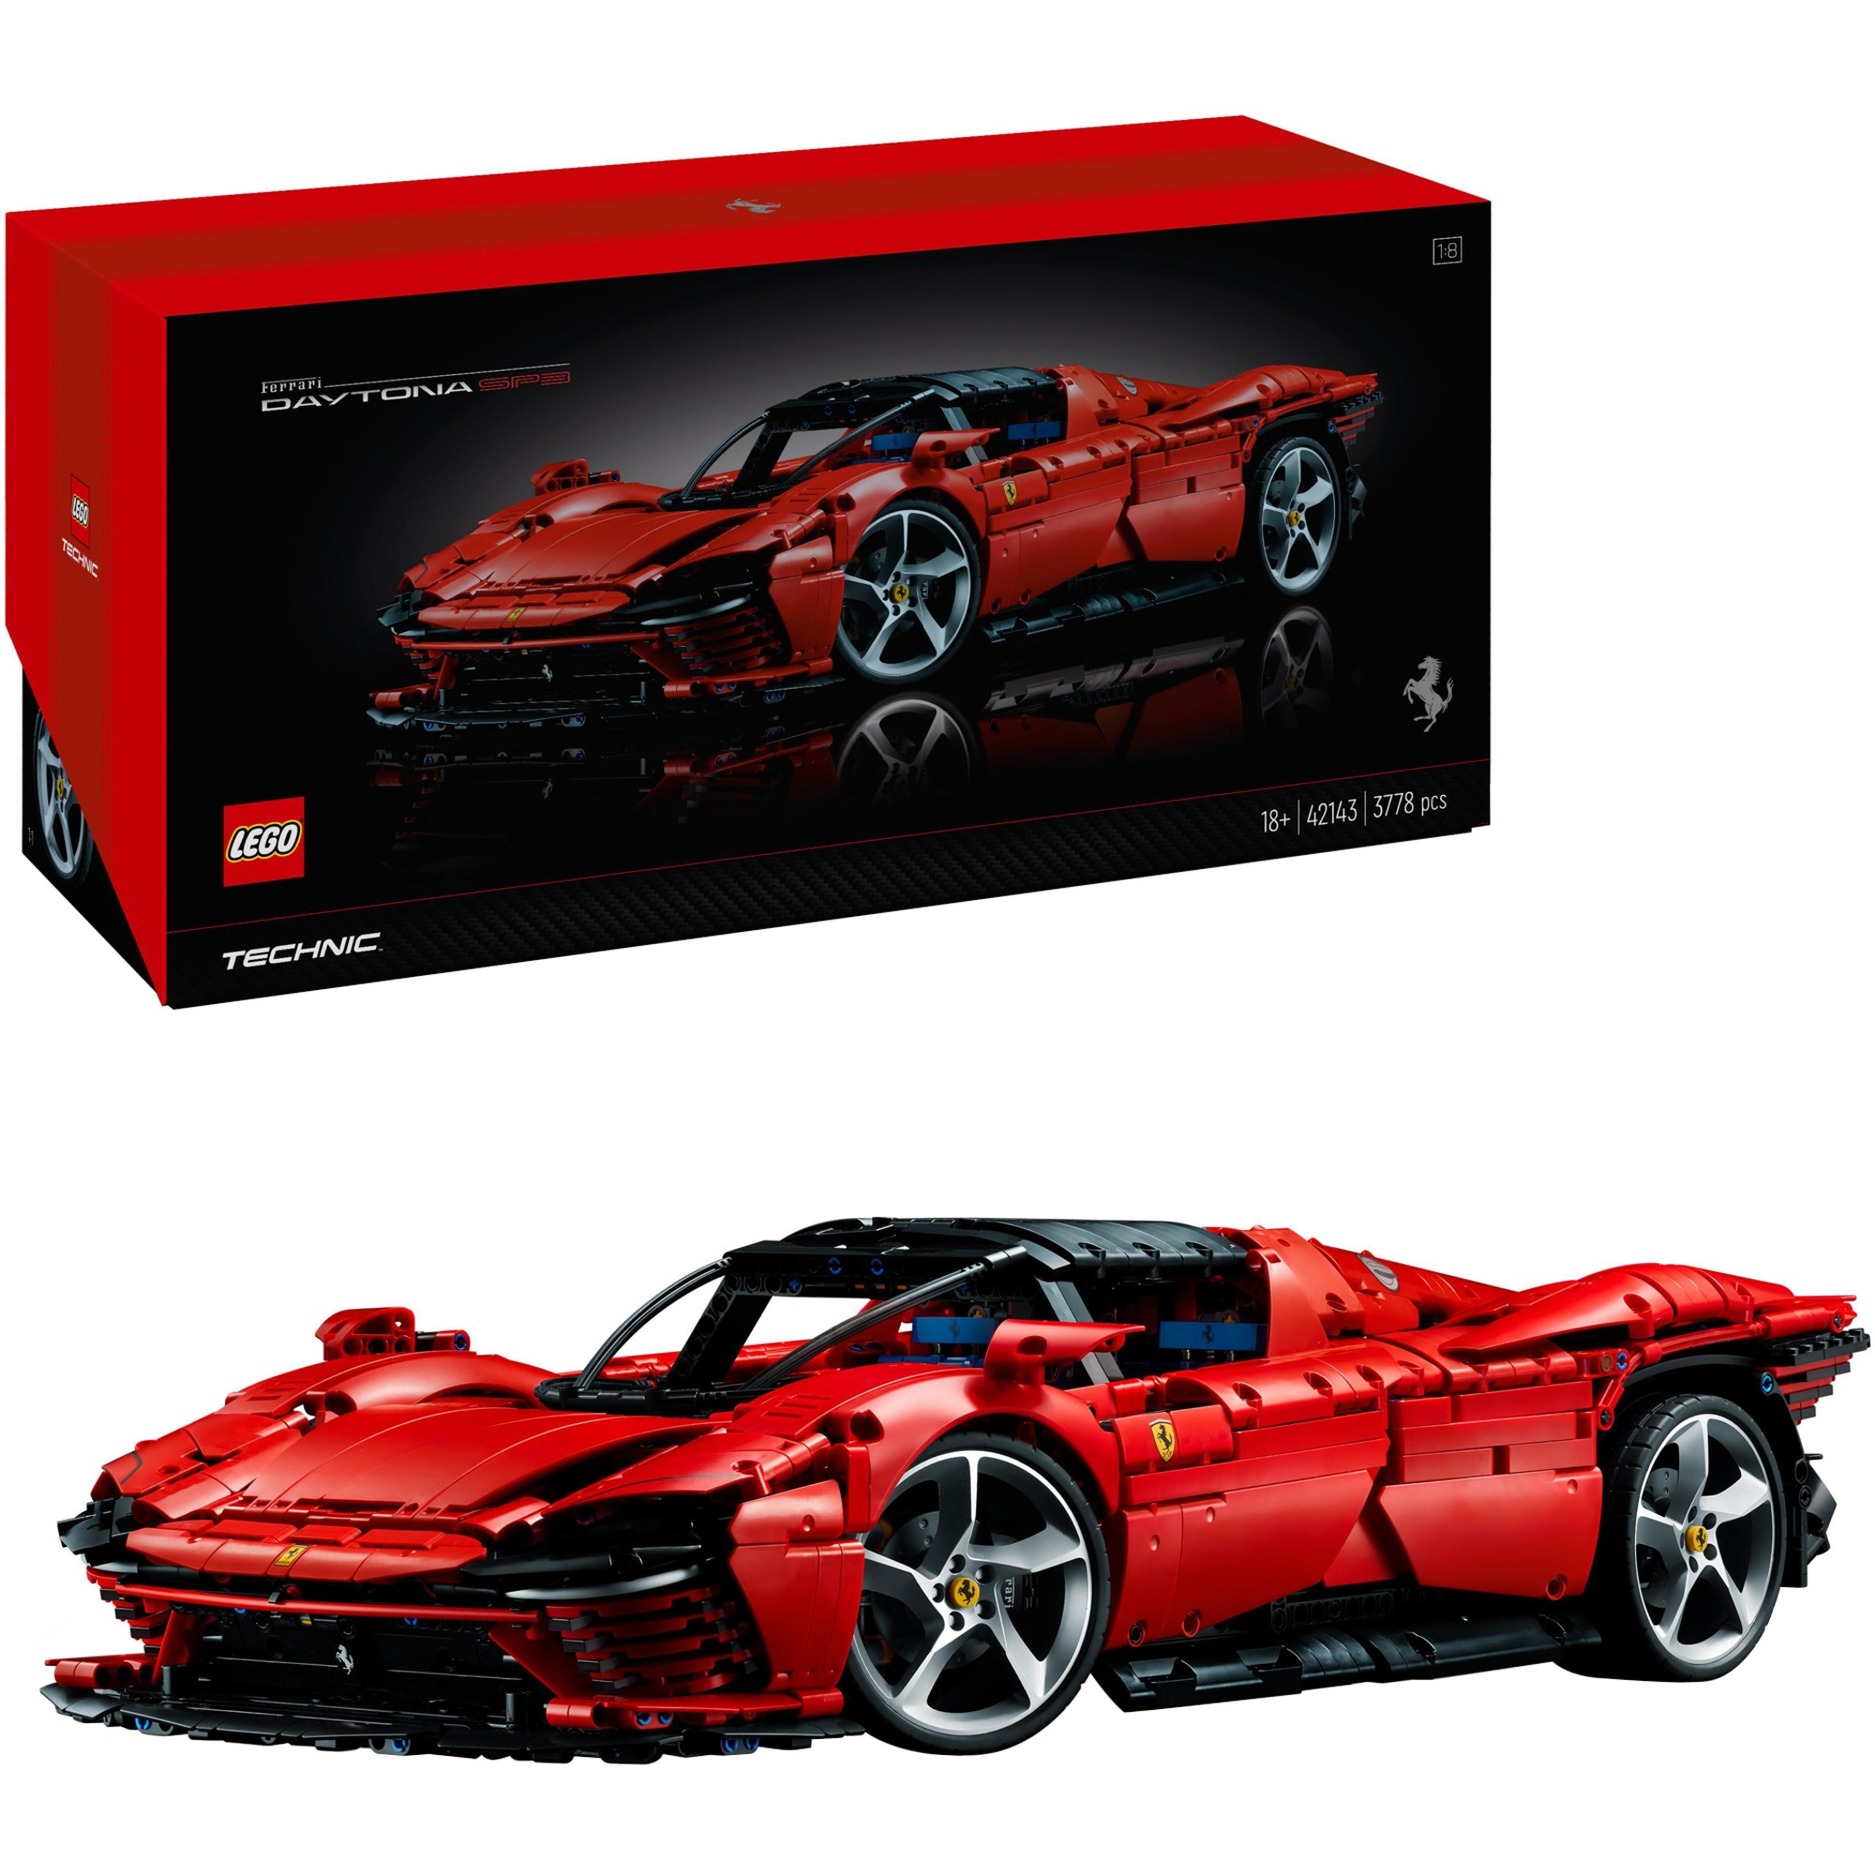 42143 Technic Ferrari Daytona SP3, Konstruktionsspielzeug von Lego